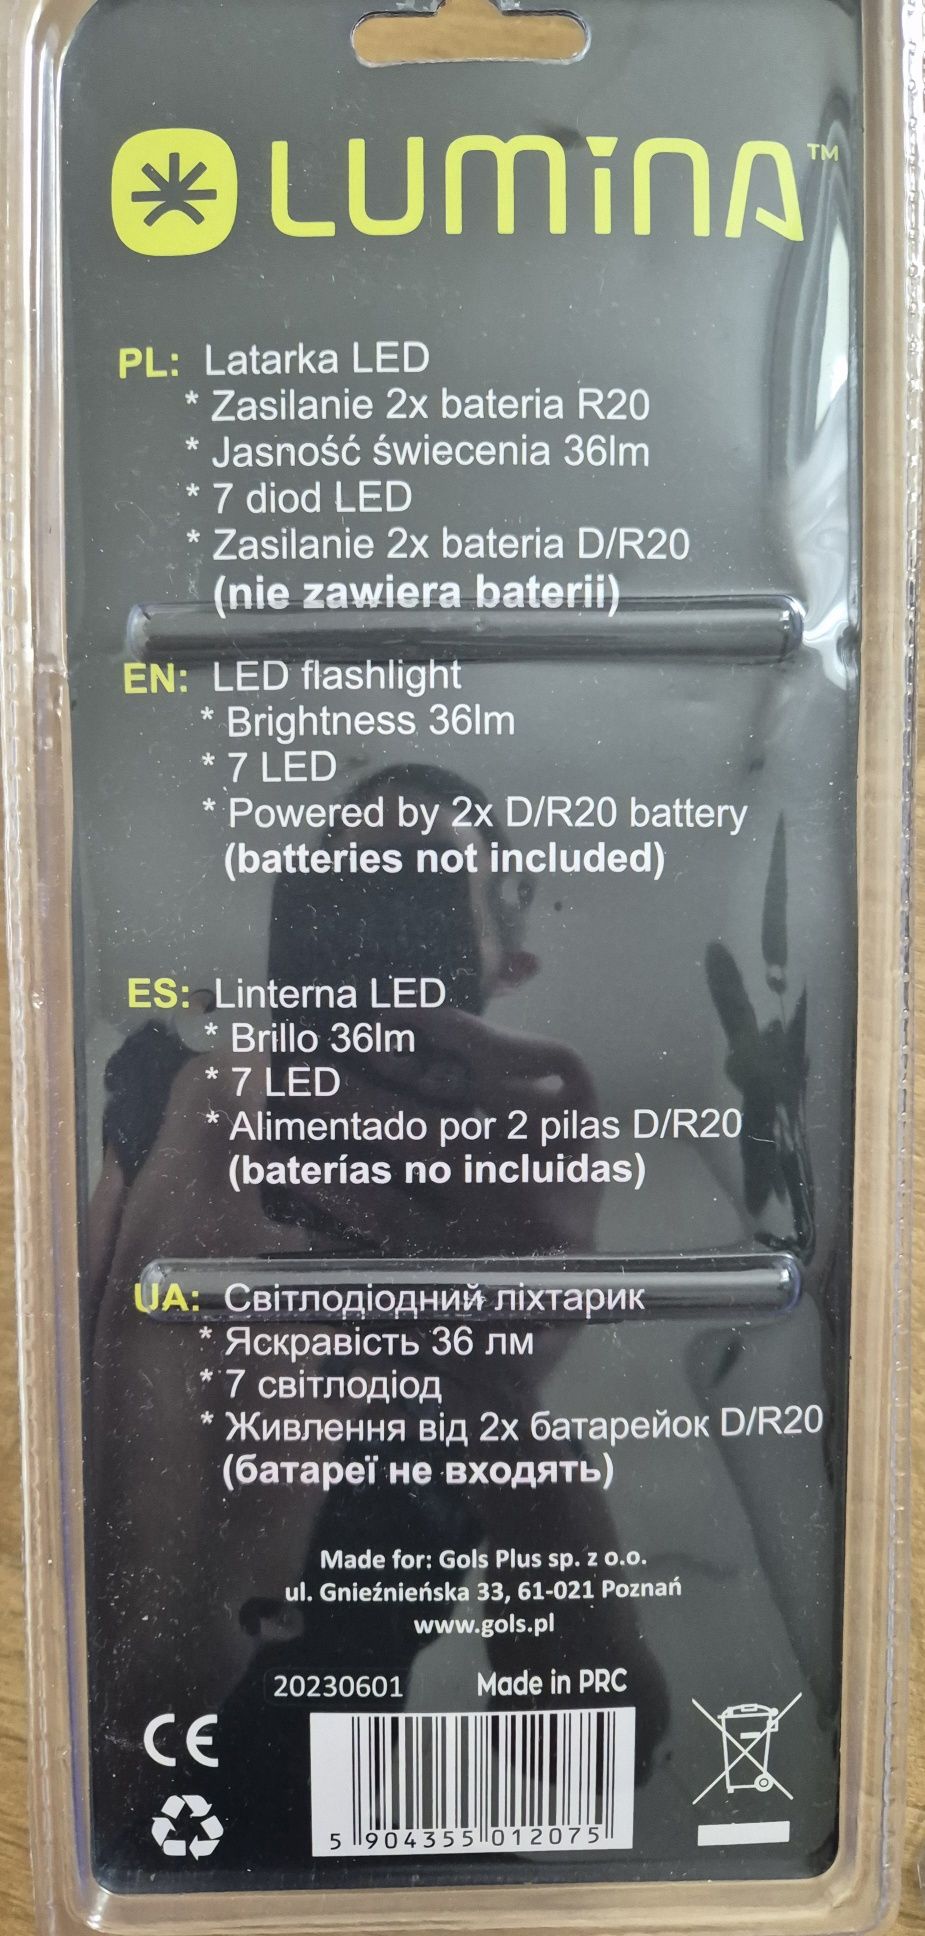 5x Latarki LED komplet 5szt.